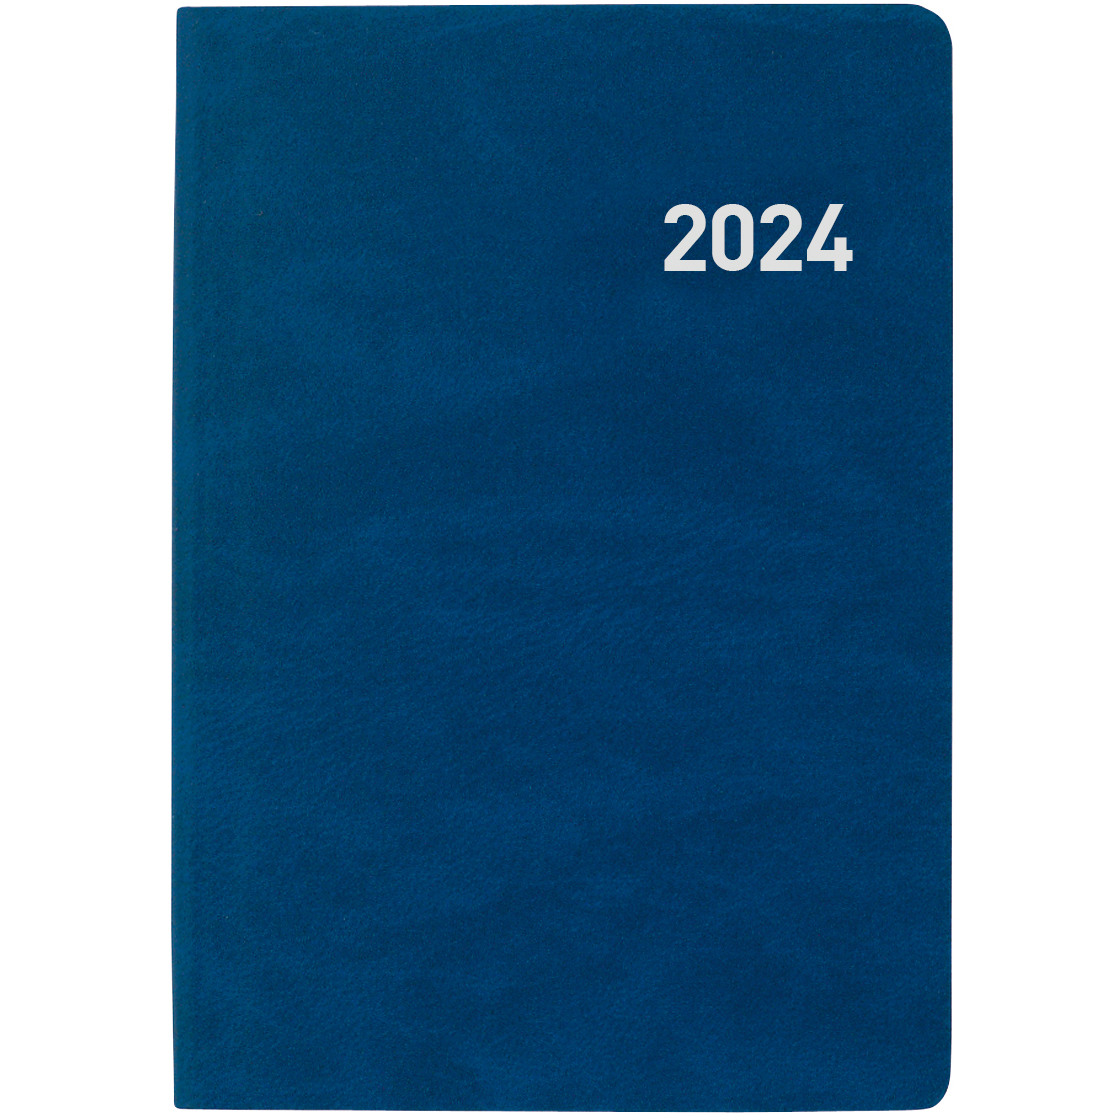 BIELLA Taschenagenda Tell 2024 823201050024 2T/1S blau 8.5x12.5cm